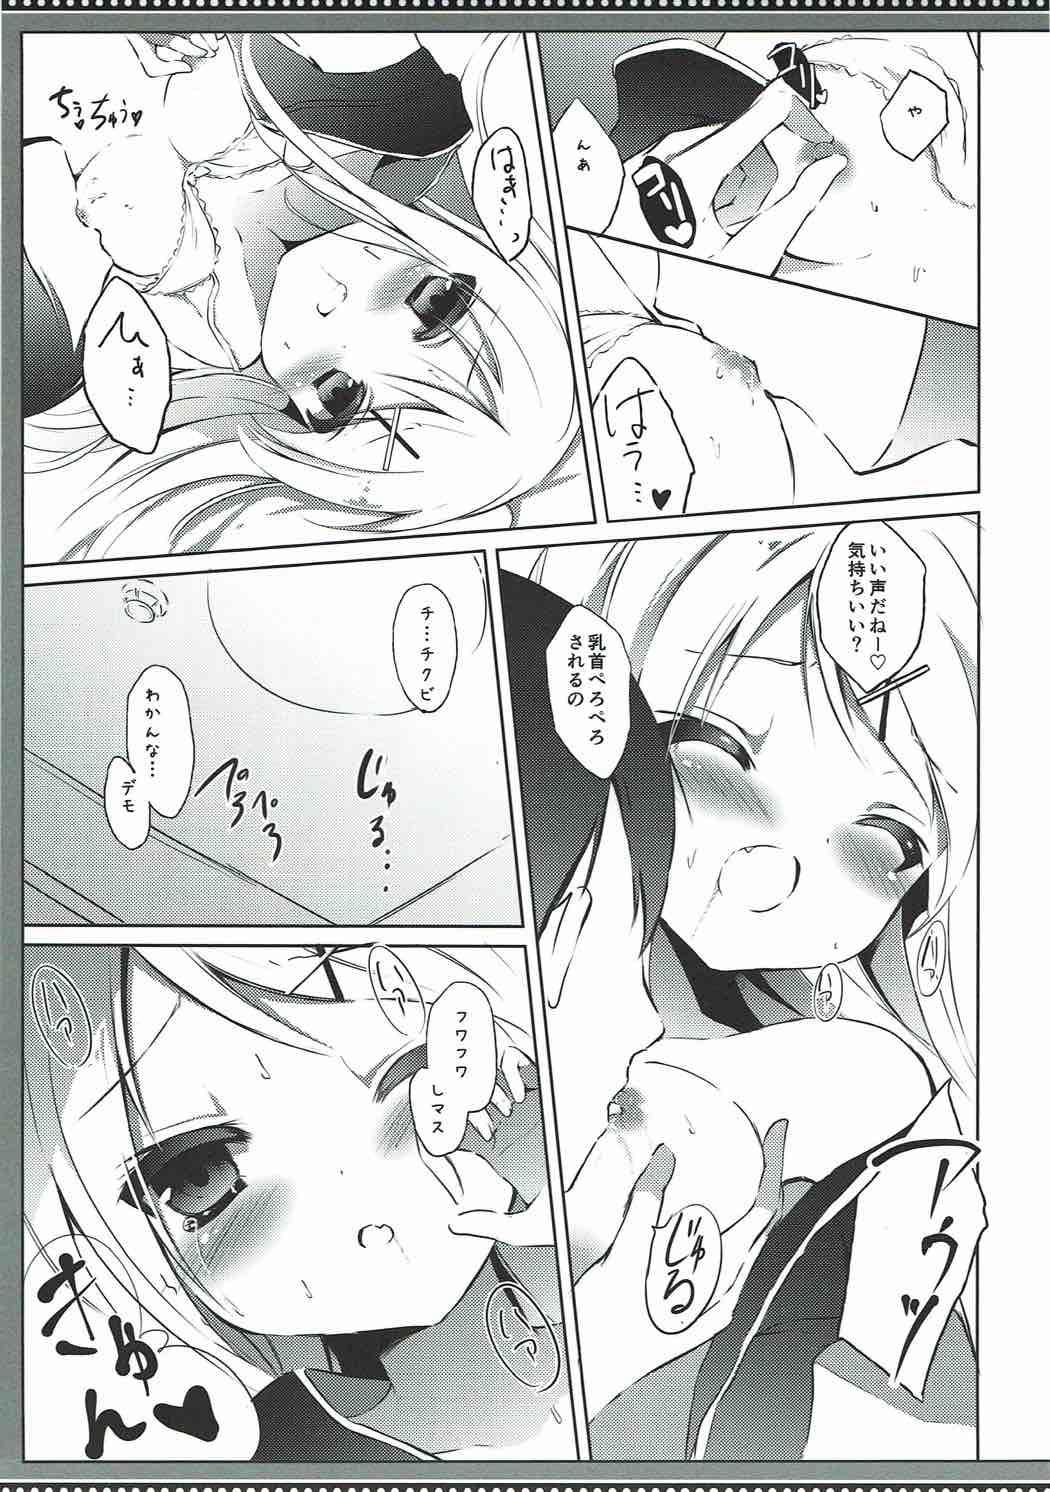 Man Karen-chan TU Owake desu! - Kiniro mosaic Spit - Page 10